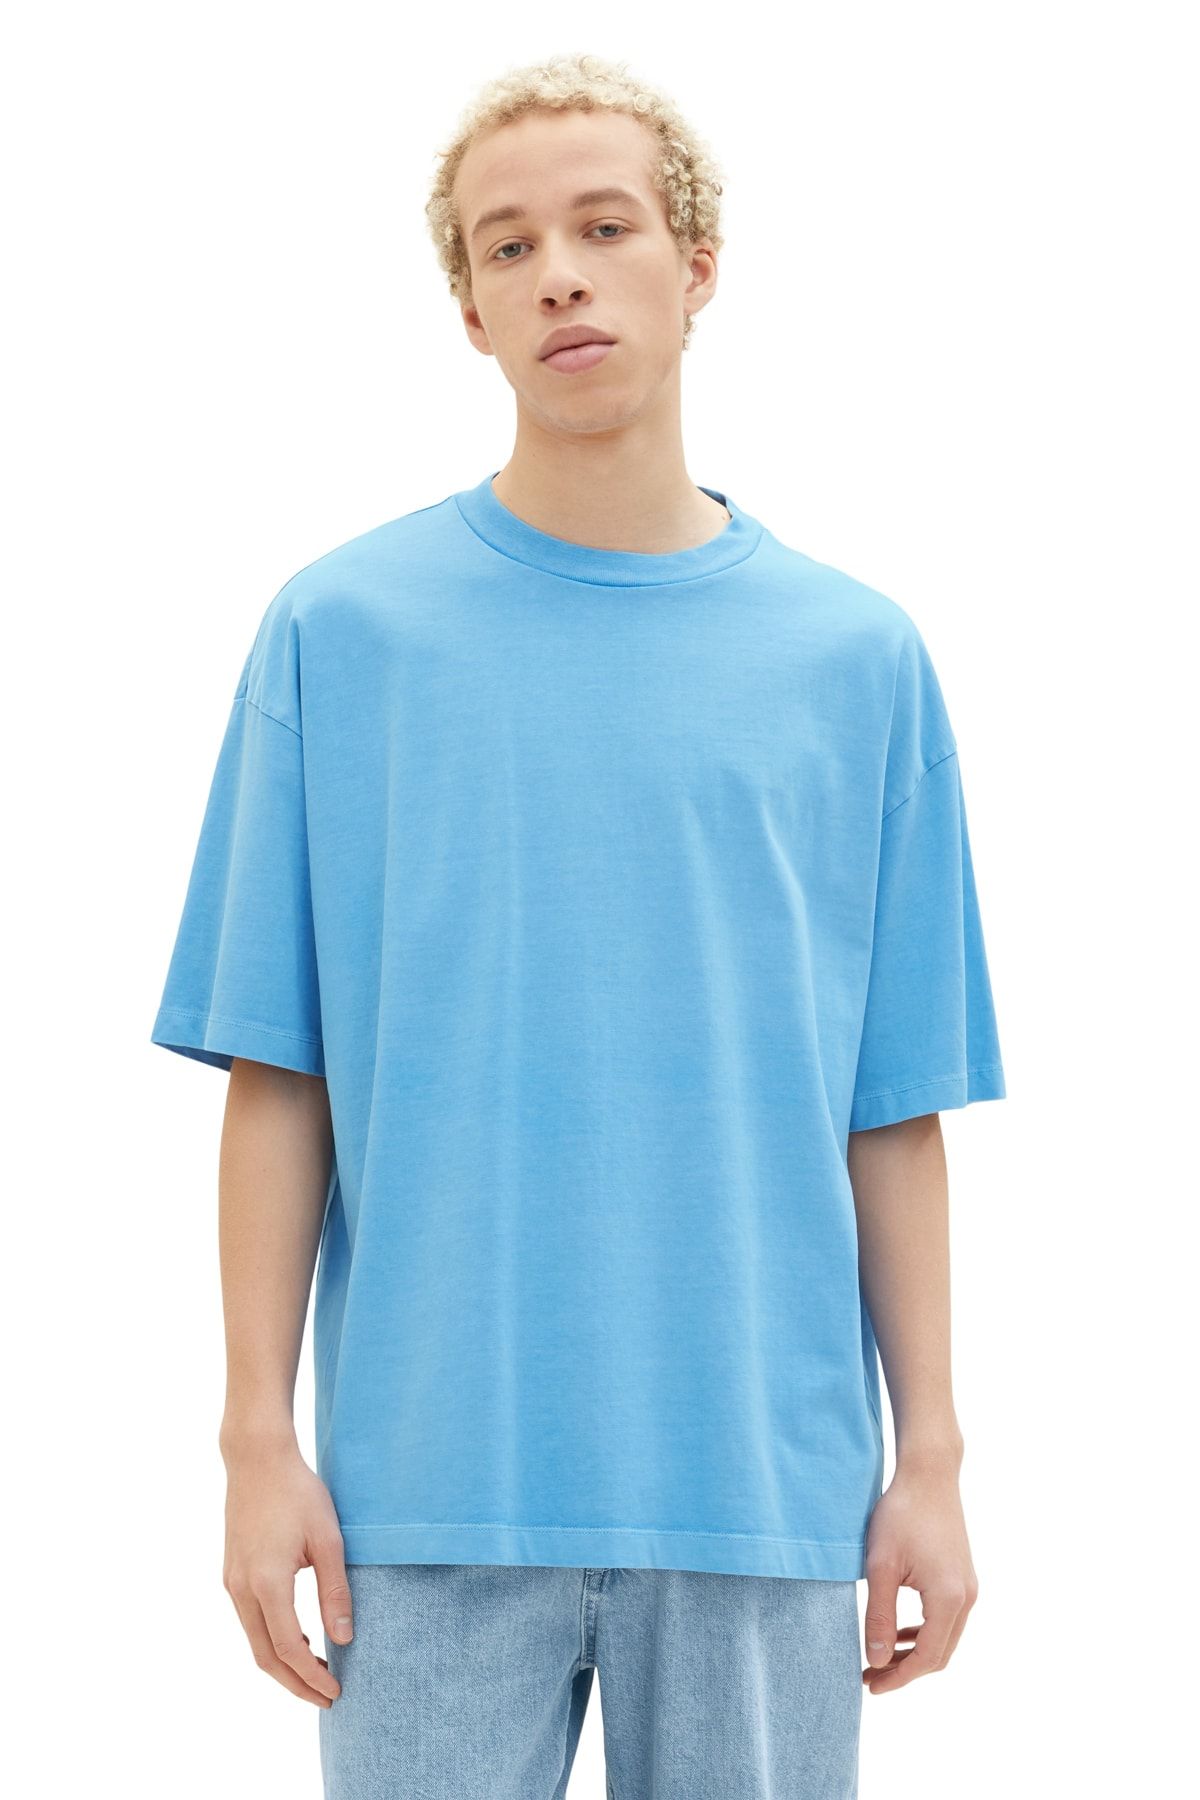 T-Shirt sky Trendyol - Men\'s Denim rainy Tom Tailor blue